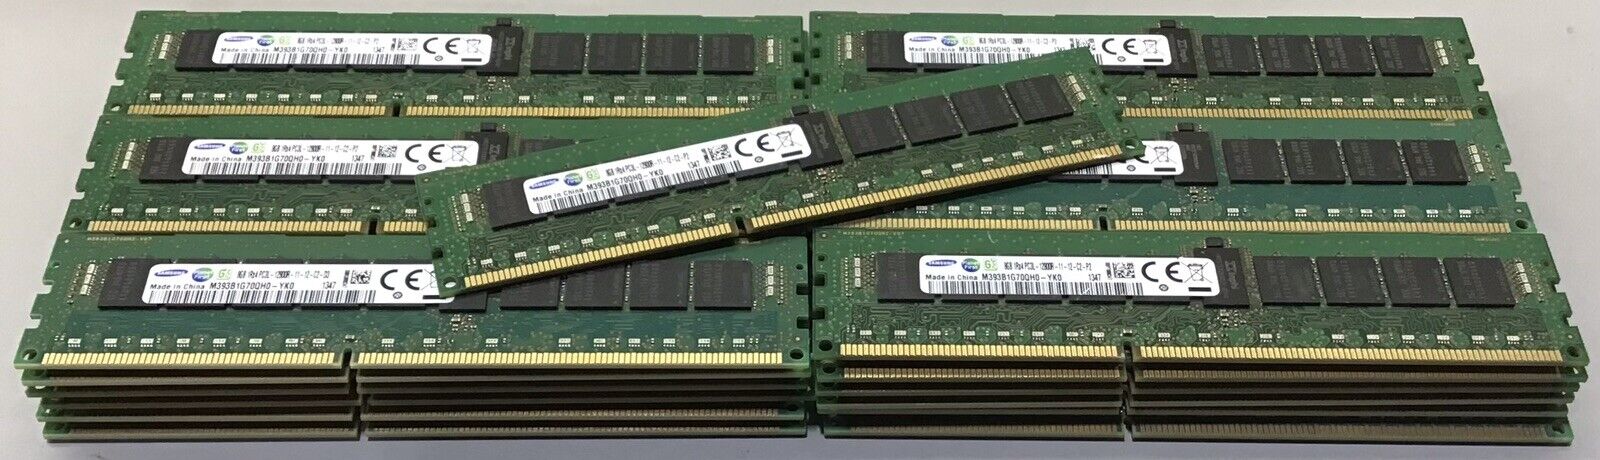 Lot of 37x 8GB 1Rx4 PC3L-12800R SAMSUNG Server MEMORY M393B1G70QH0-YK0